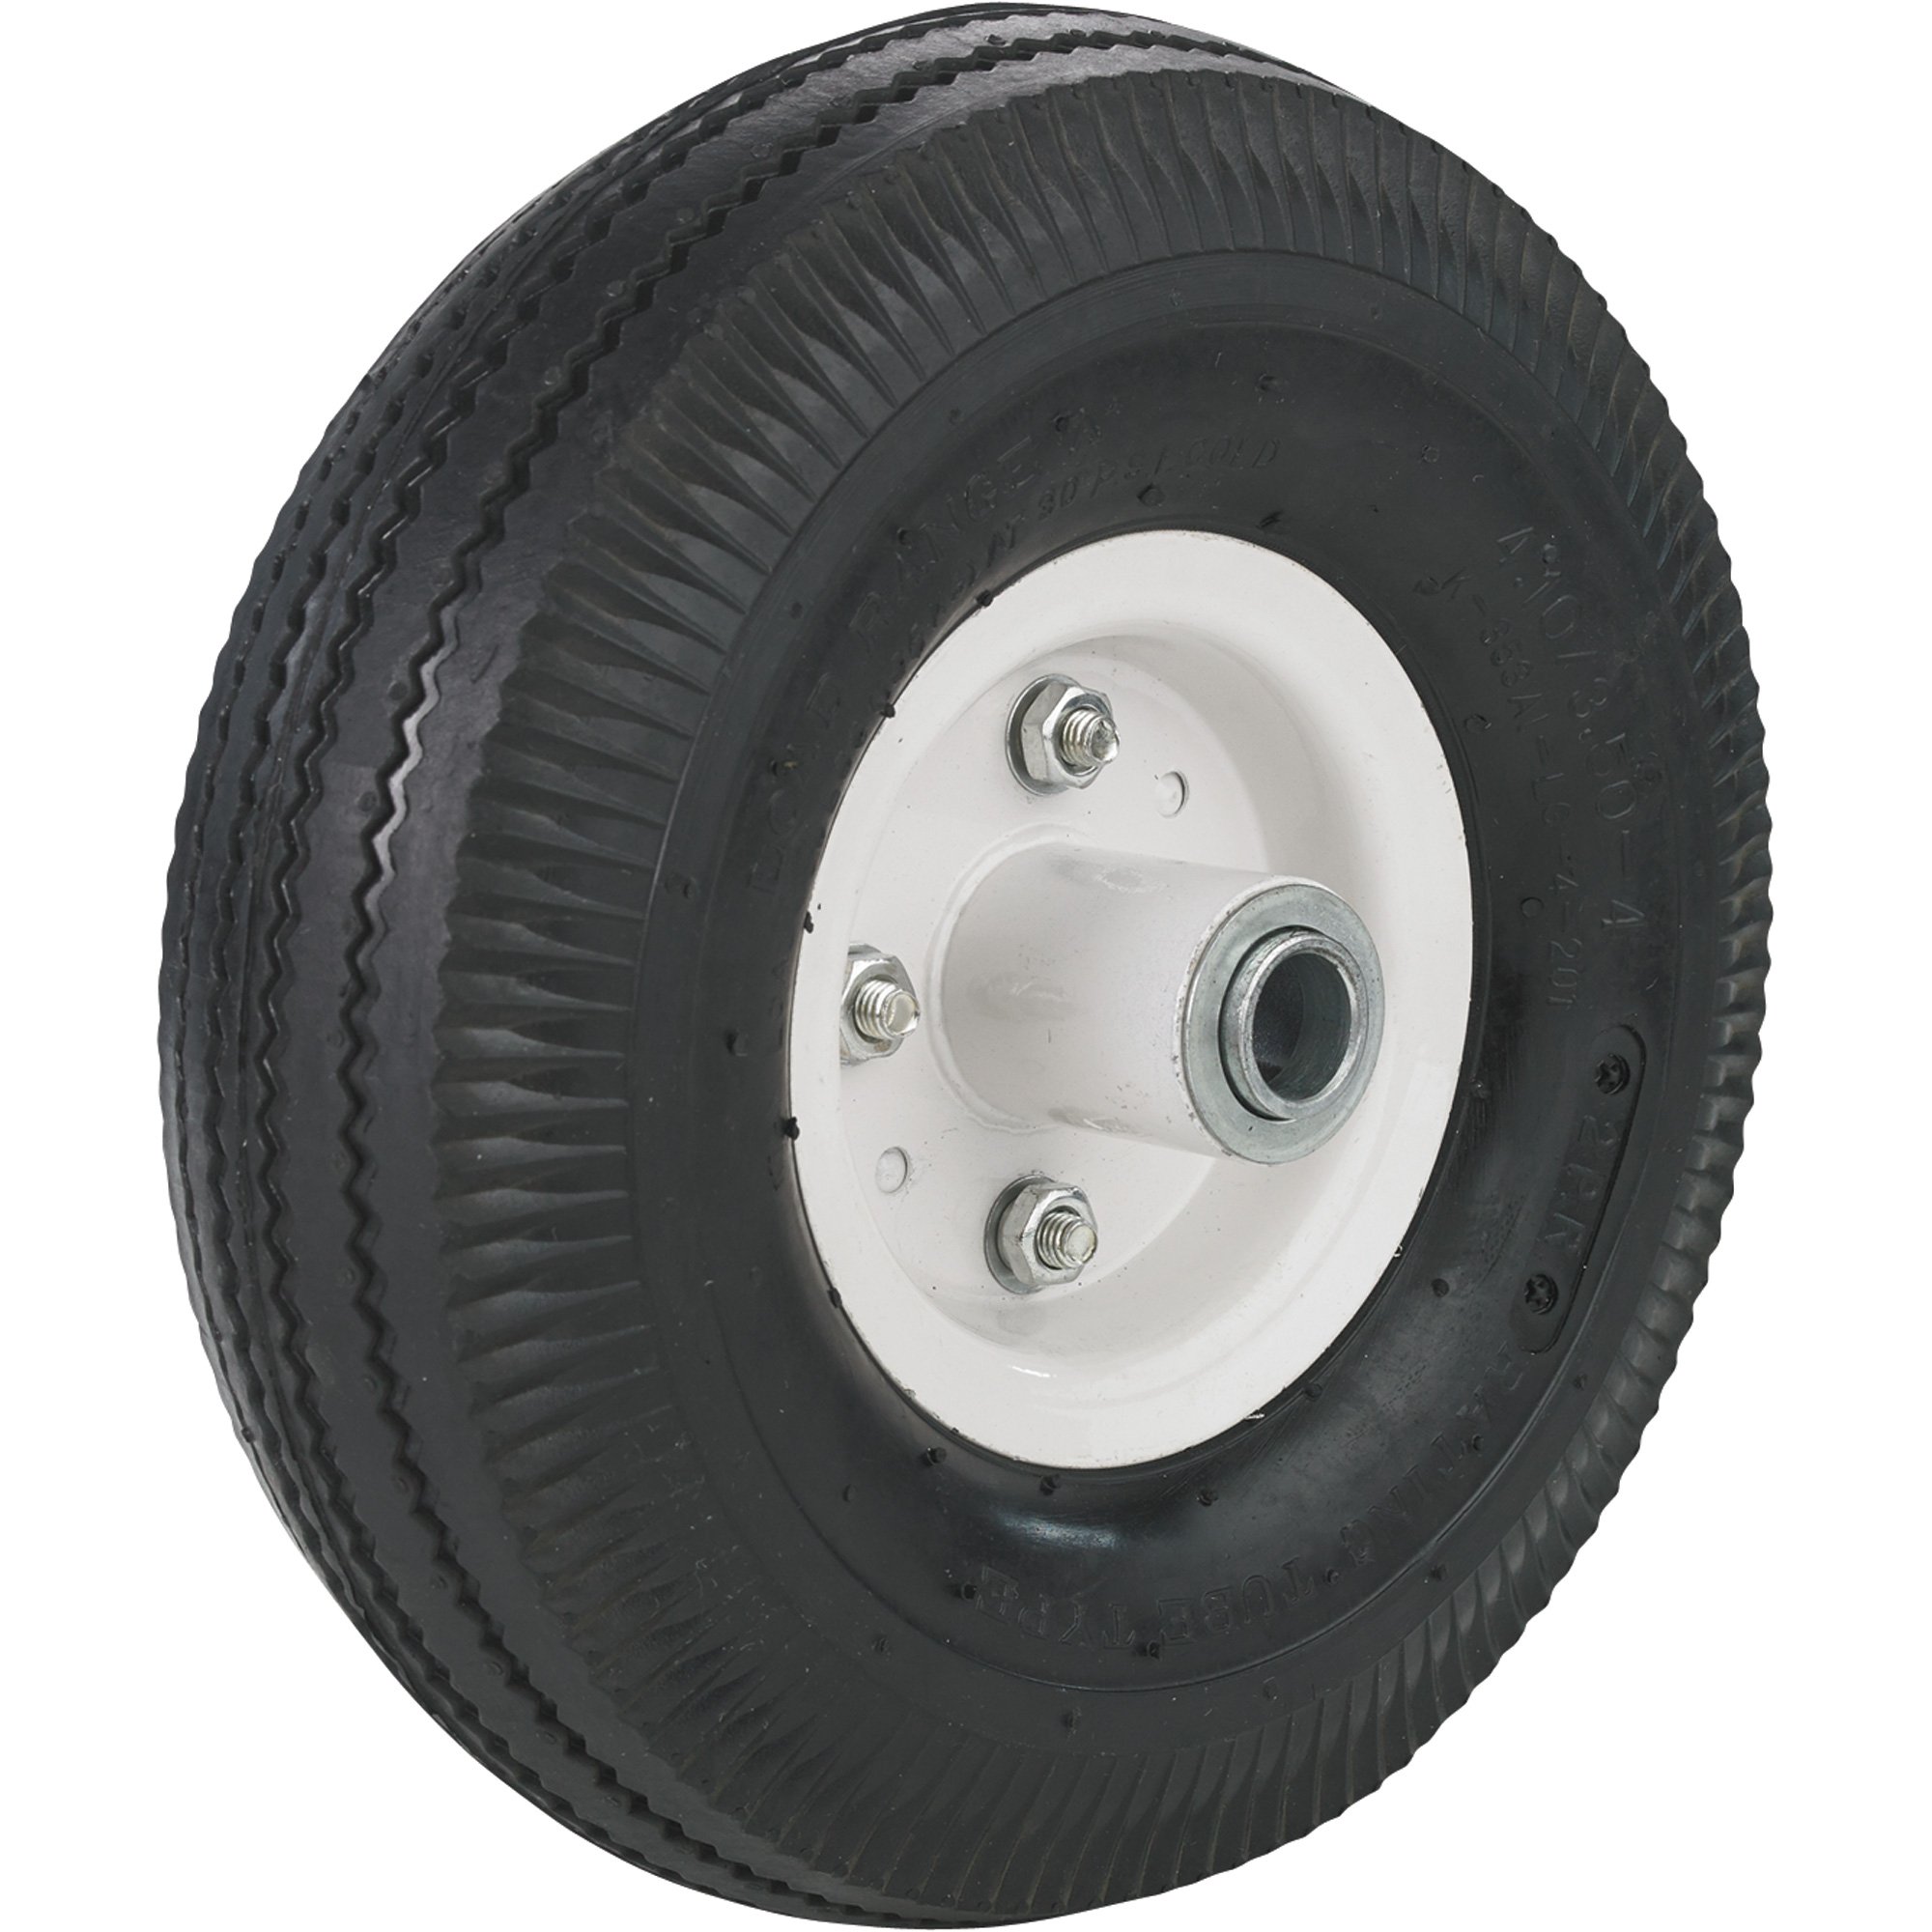 Pneumatic Tire on Split-Rim Steel Wheel — 10in. x 4.10/3.50-4